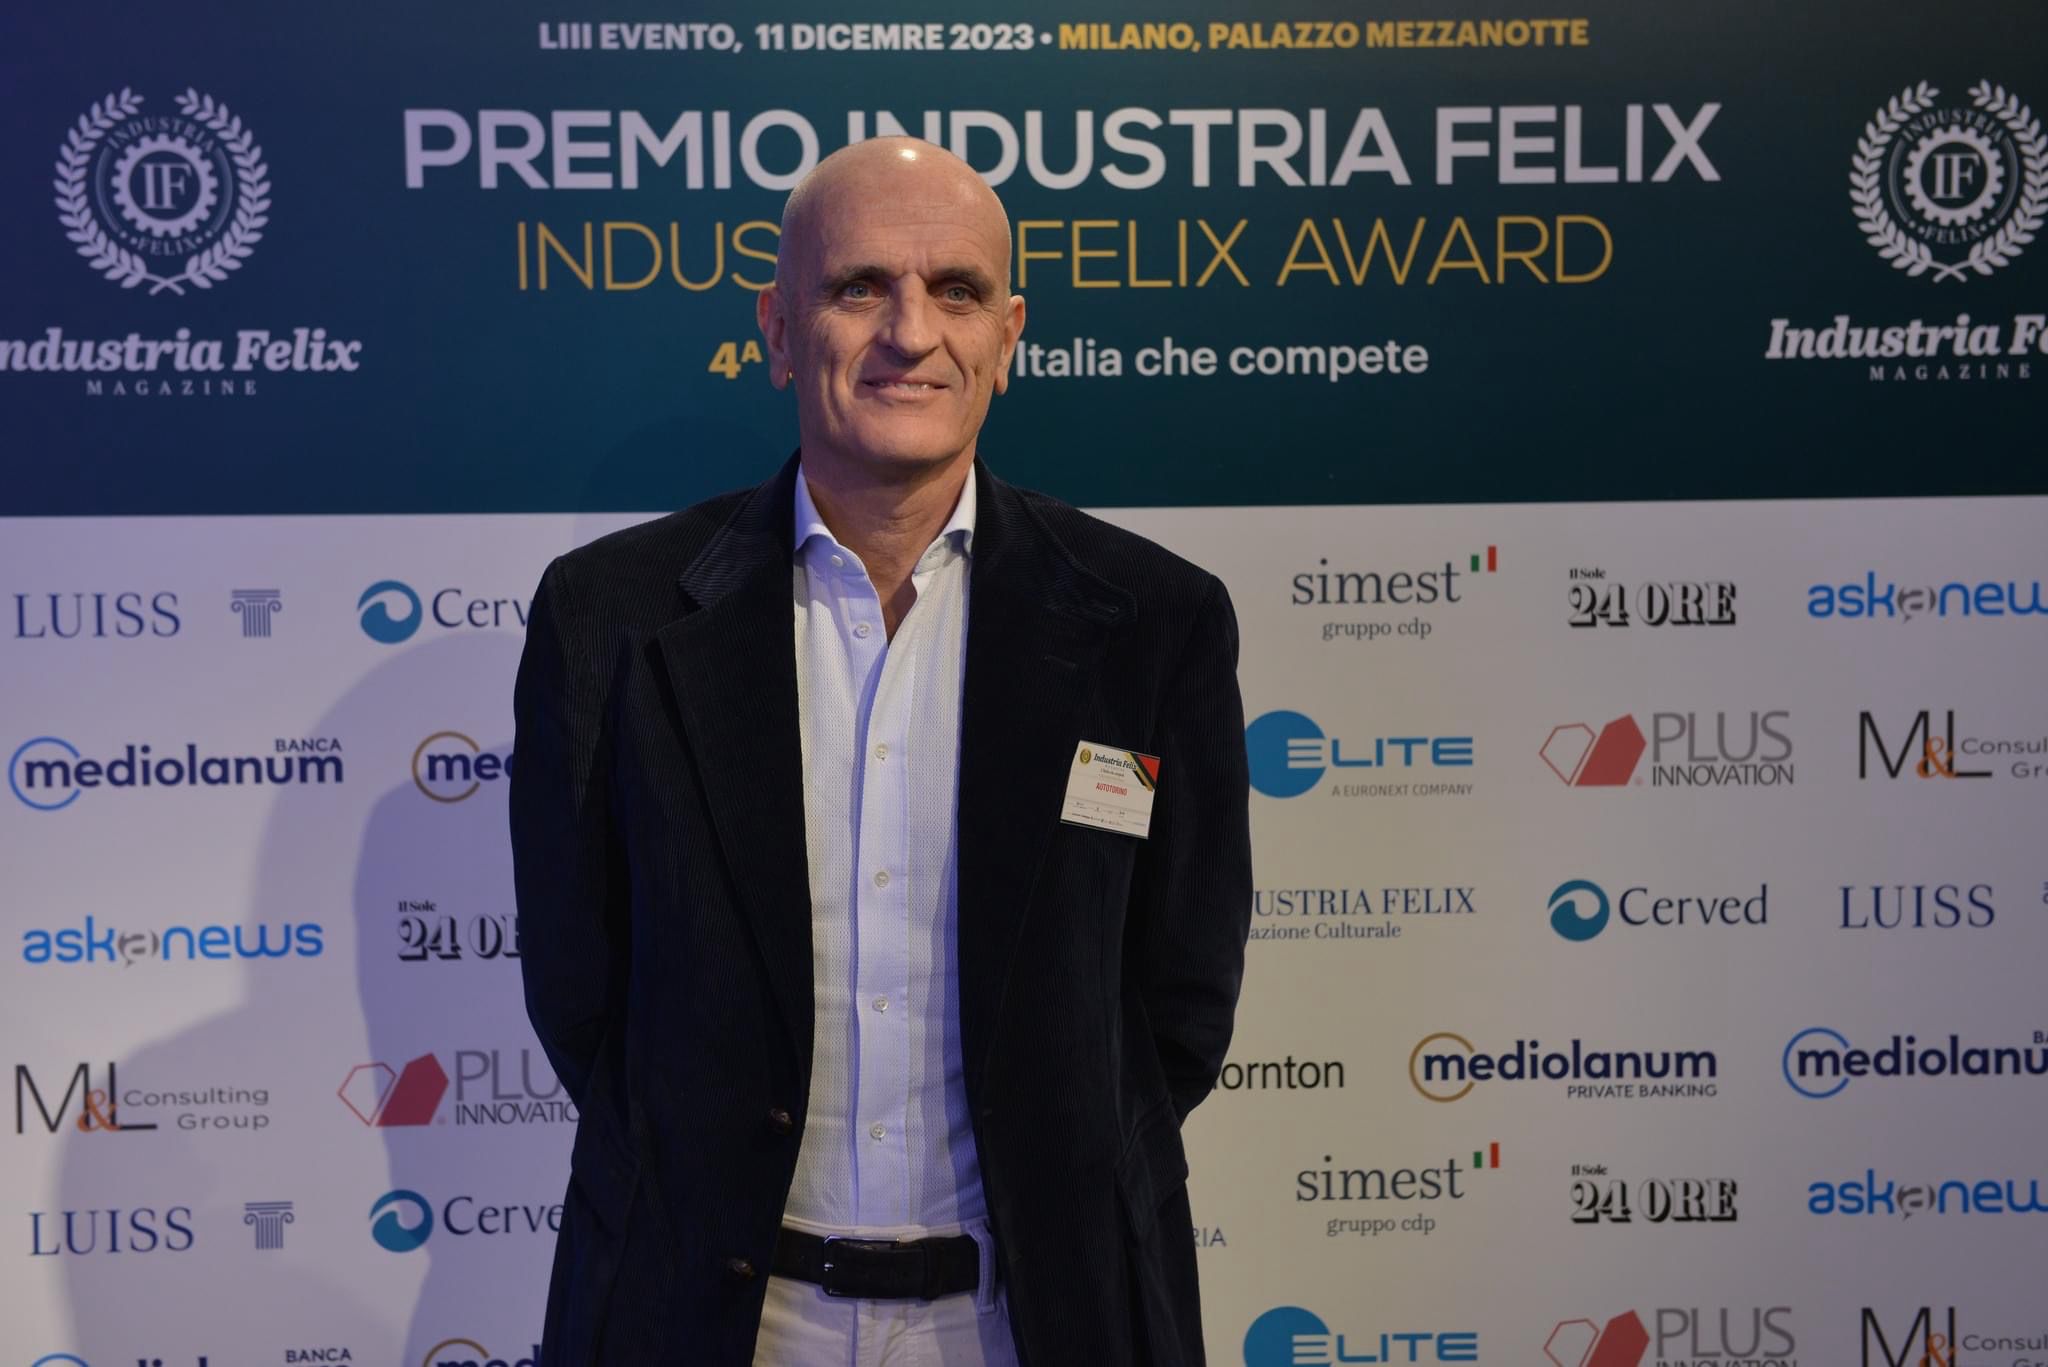 Industria Felix premia le 196 imprese più competitive d’Italia fra cui Autotorino che si conferma “Dealer Felix” oltre che Top Dealers Italia!